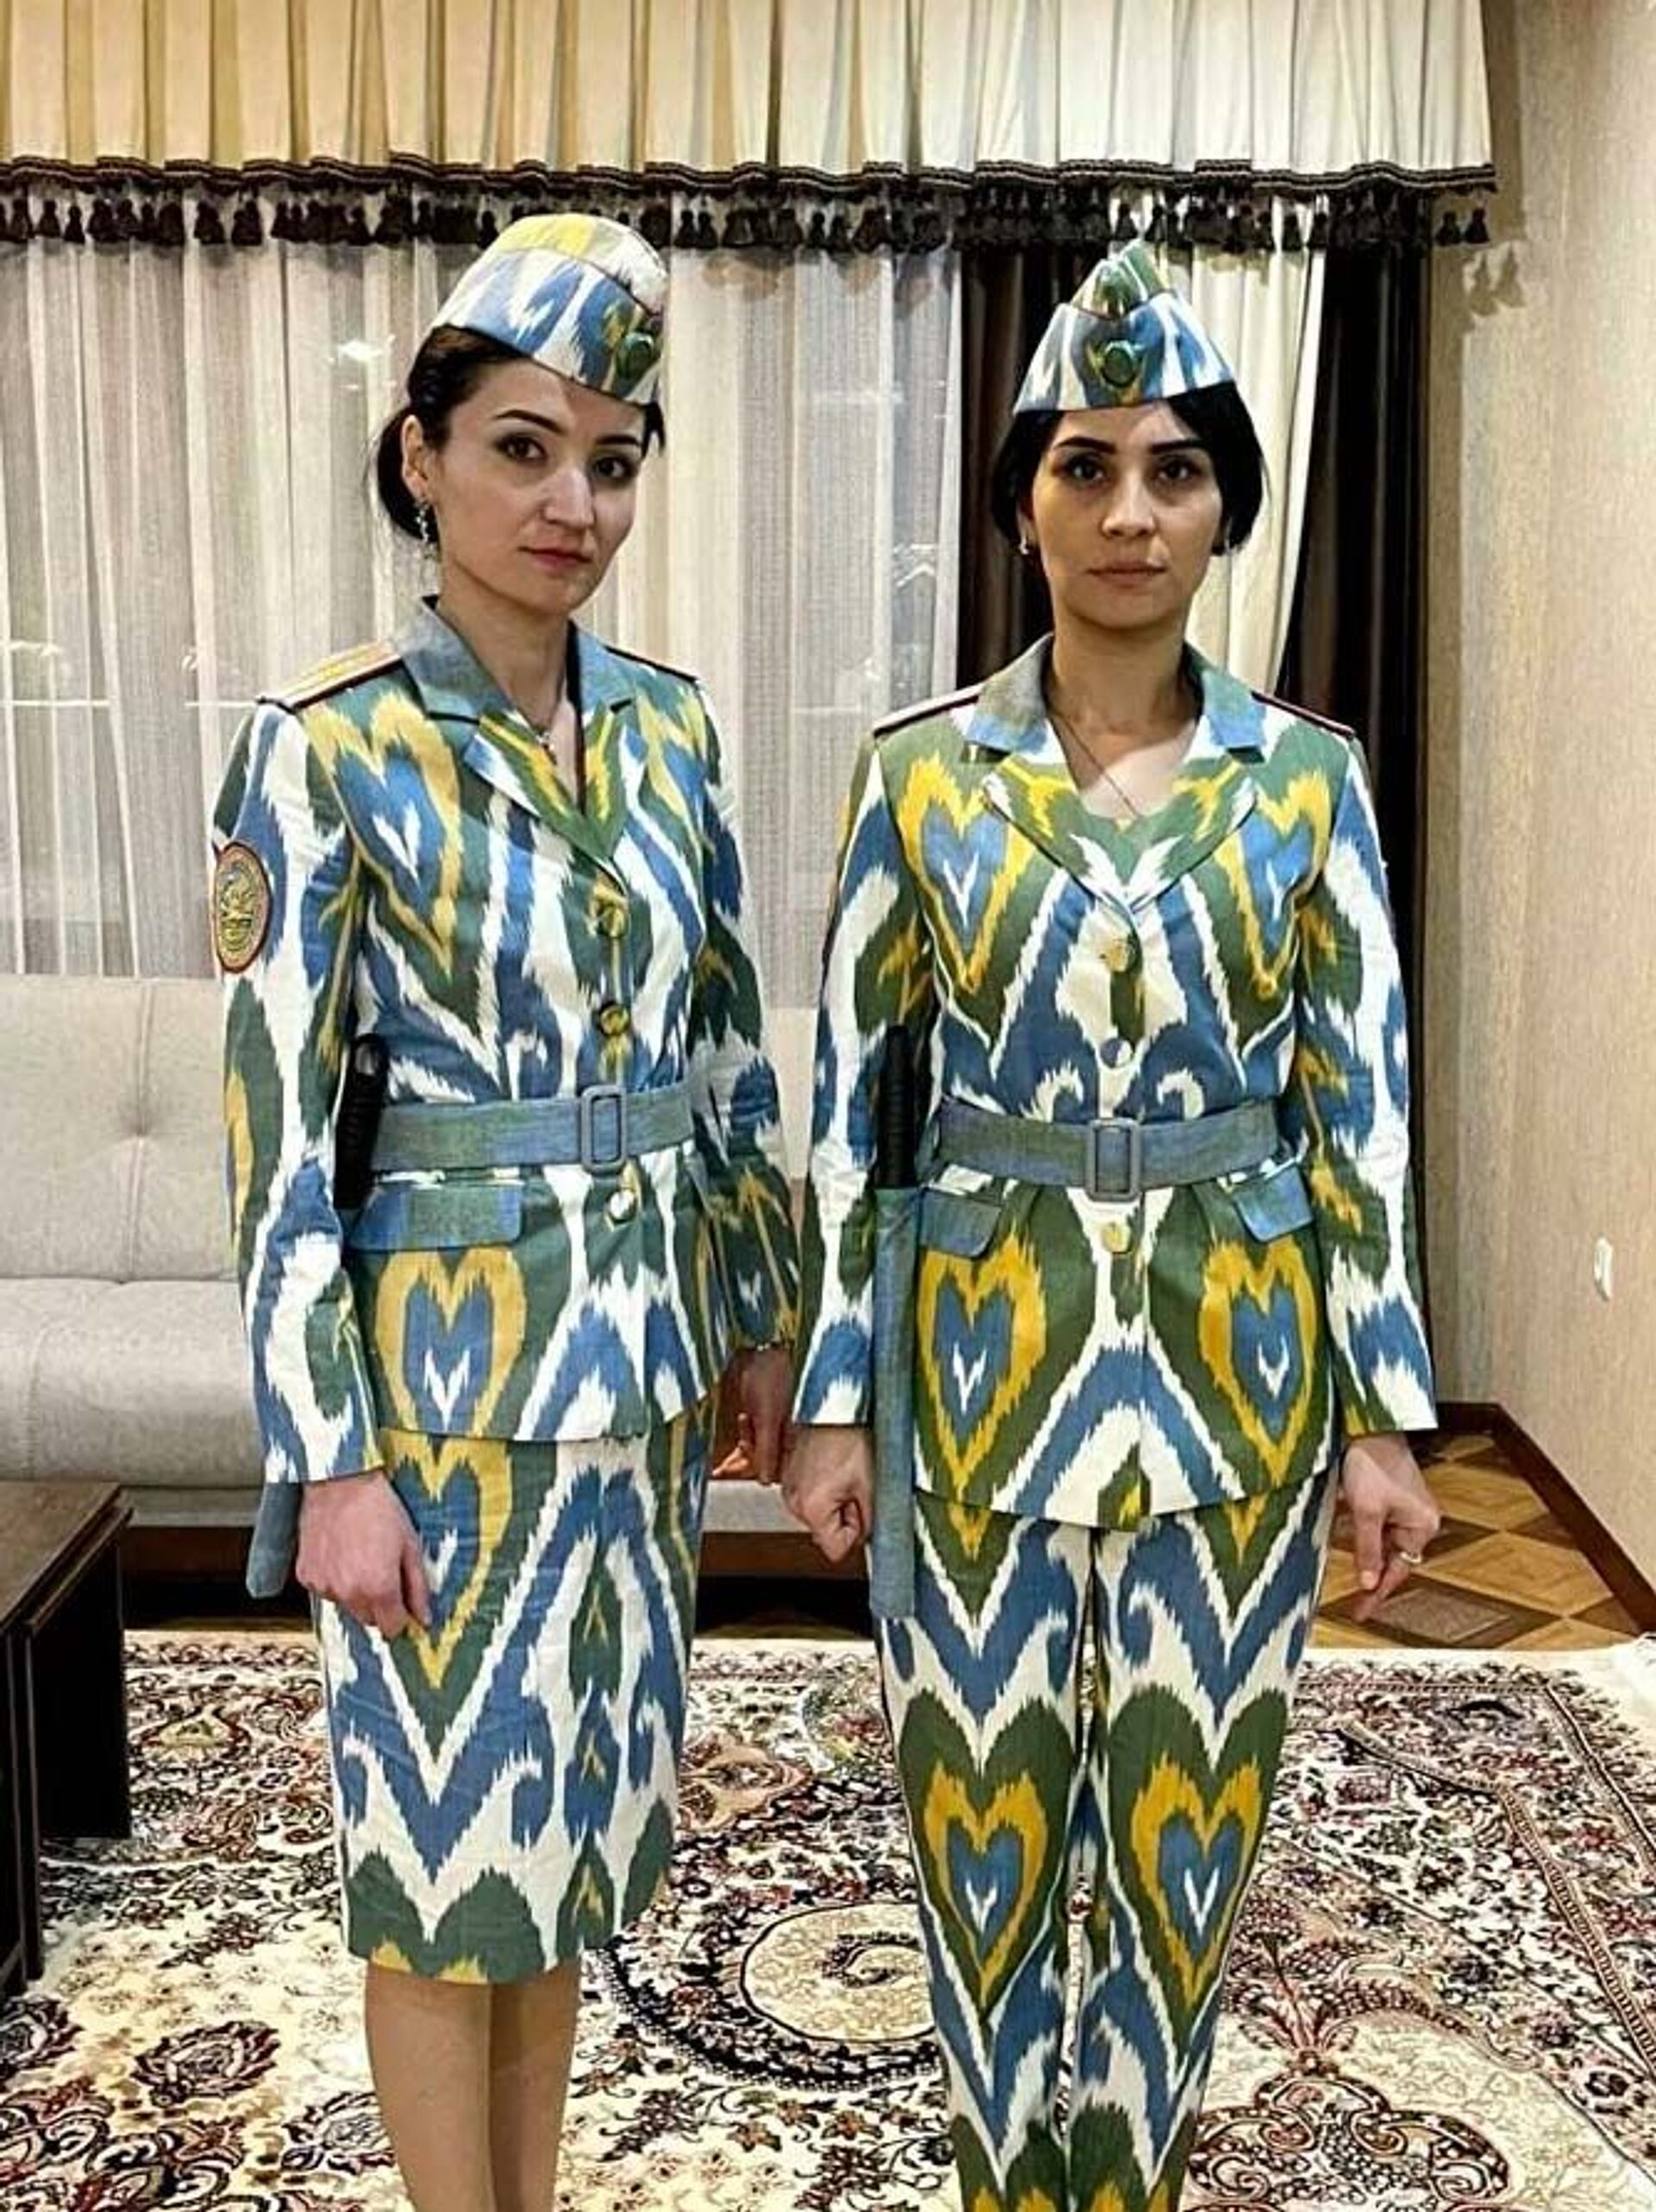 Дизайн милицейской формы для женщин разработали в Таджикистане. Фото - Sputnik Кыргызстан, 1920, 12.04.2021